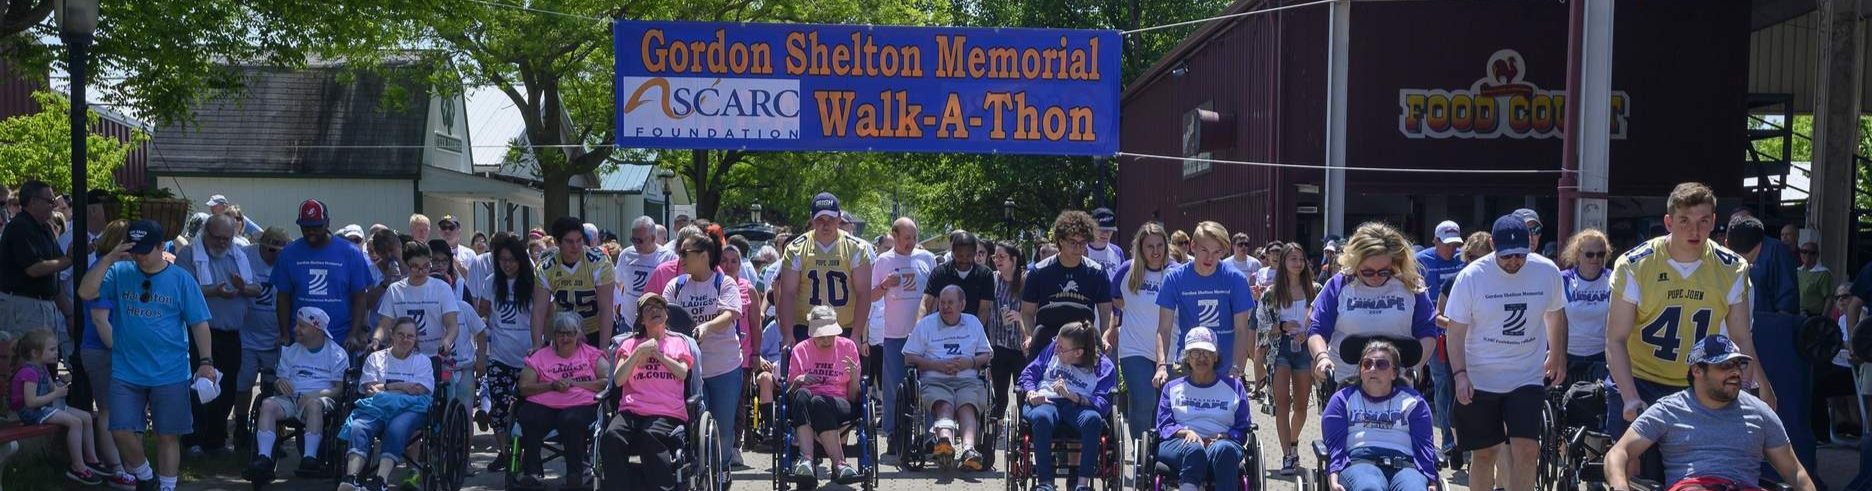 Gordon Shelton Memorial Walkathon